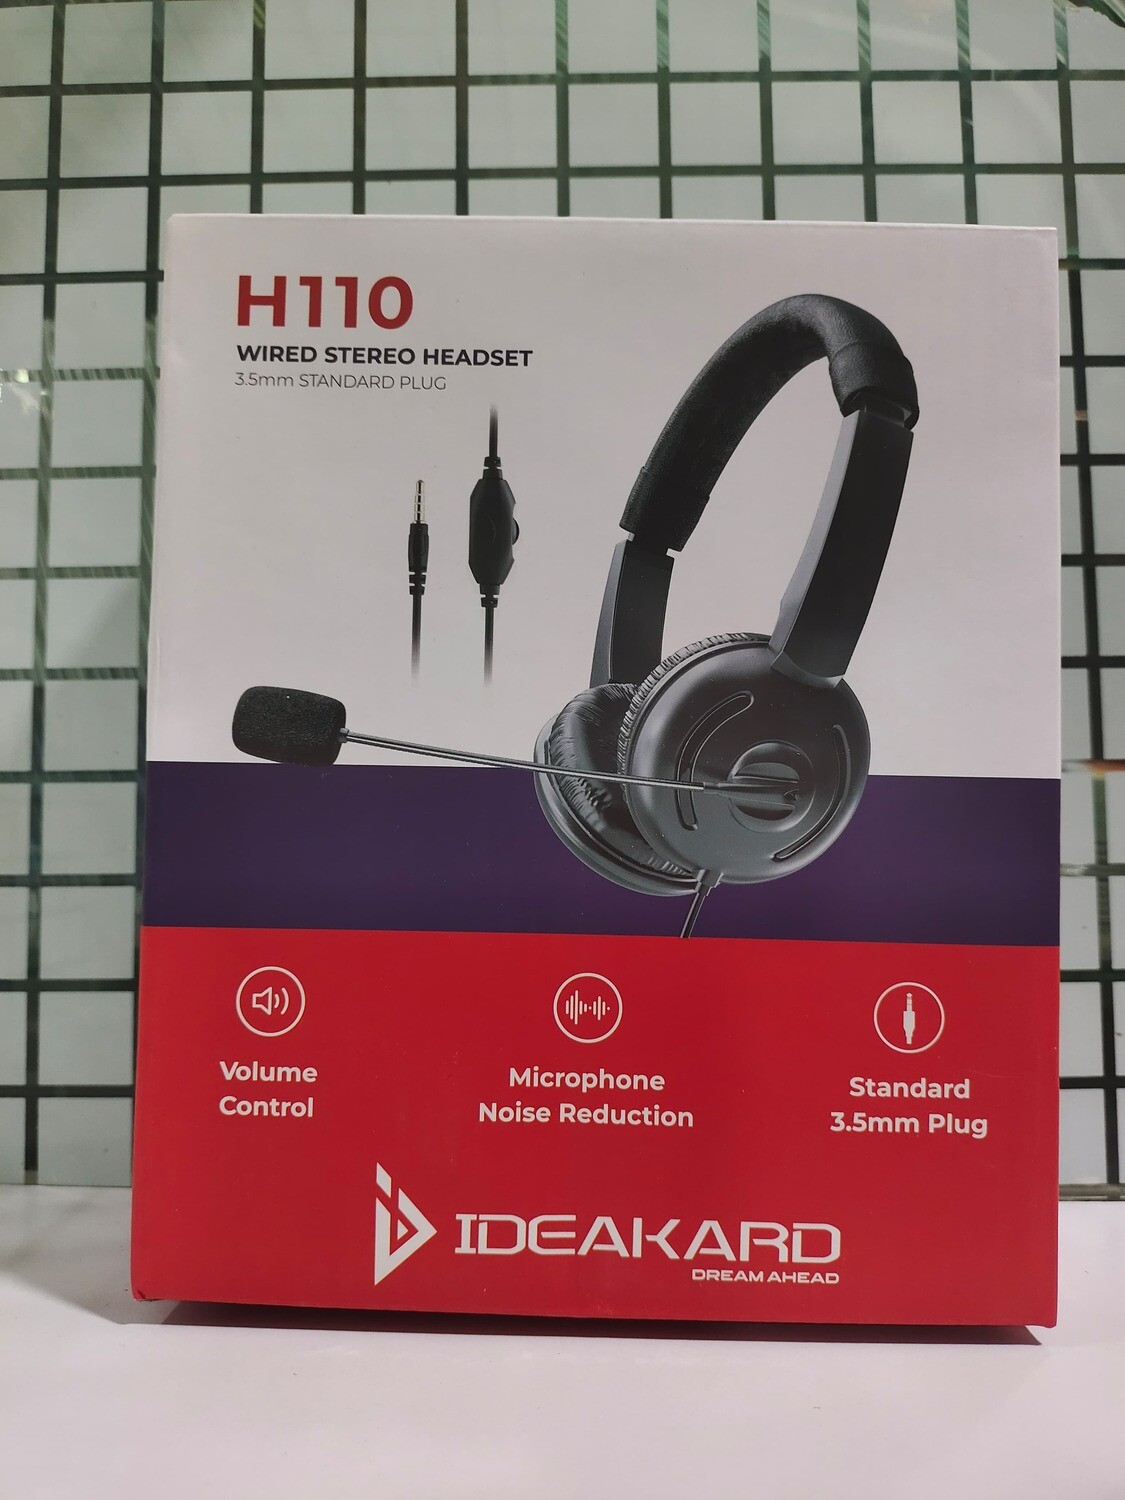 Ideakard H110 Stereo Headset